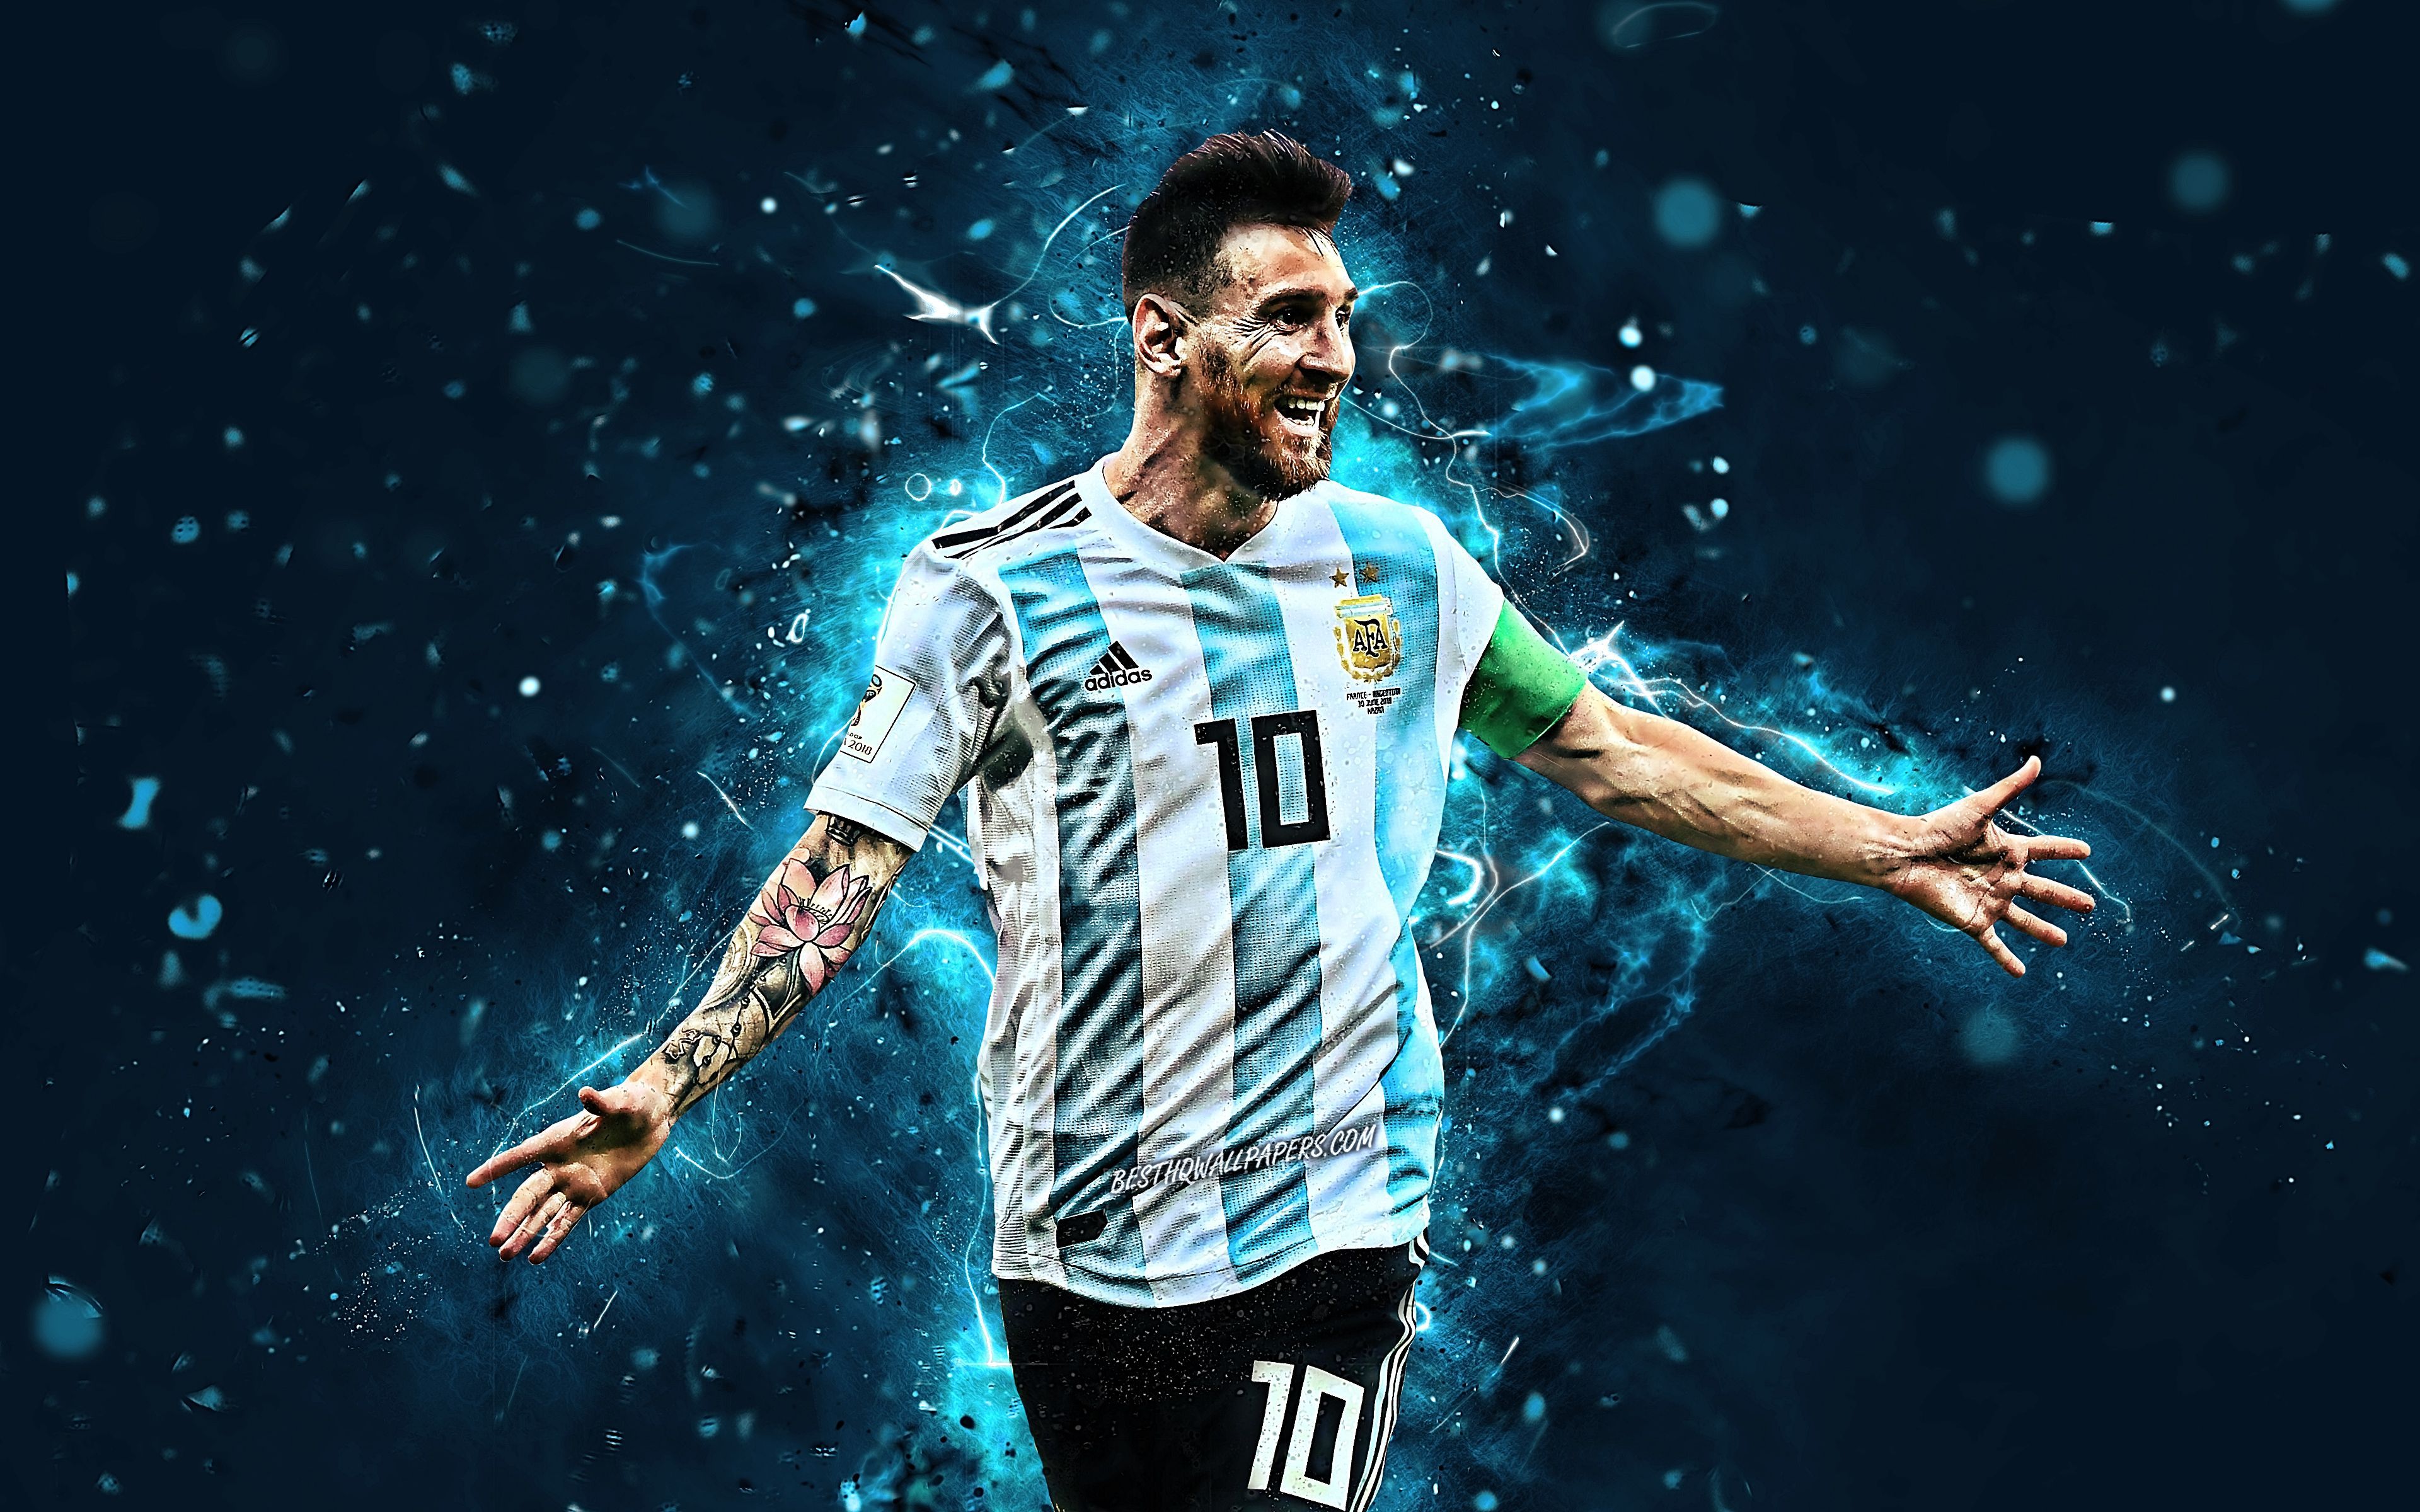 Hình nền Argentina Messi 2022 với độ phân giải cao có thể tạo ra không gian chất lượng cho thiết bị của bạn. Với Messi trên bức hình, bạn sẽ được truyền cảm hứng về niềm đam mê bóng đá và đội tuyển Argentina của mình.